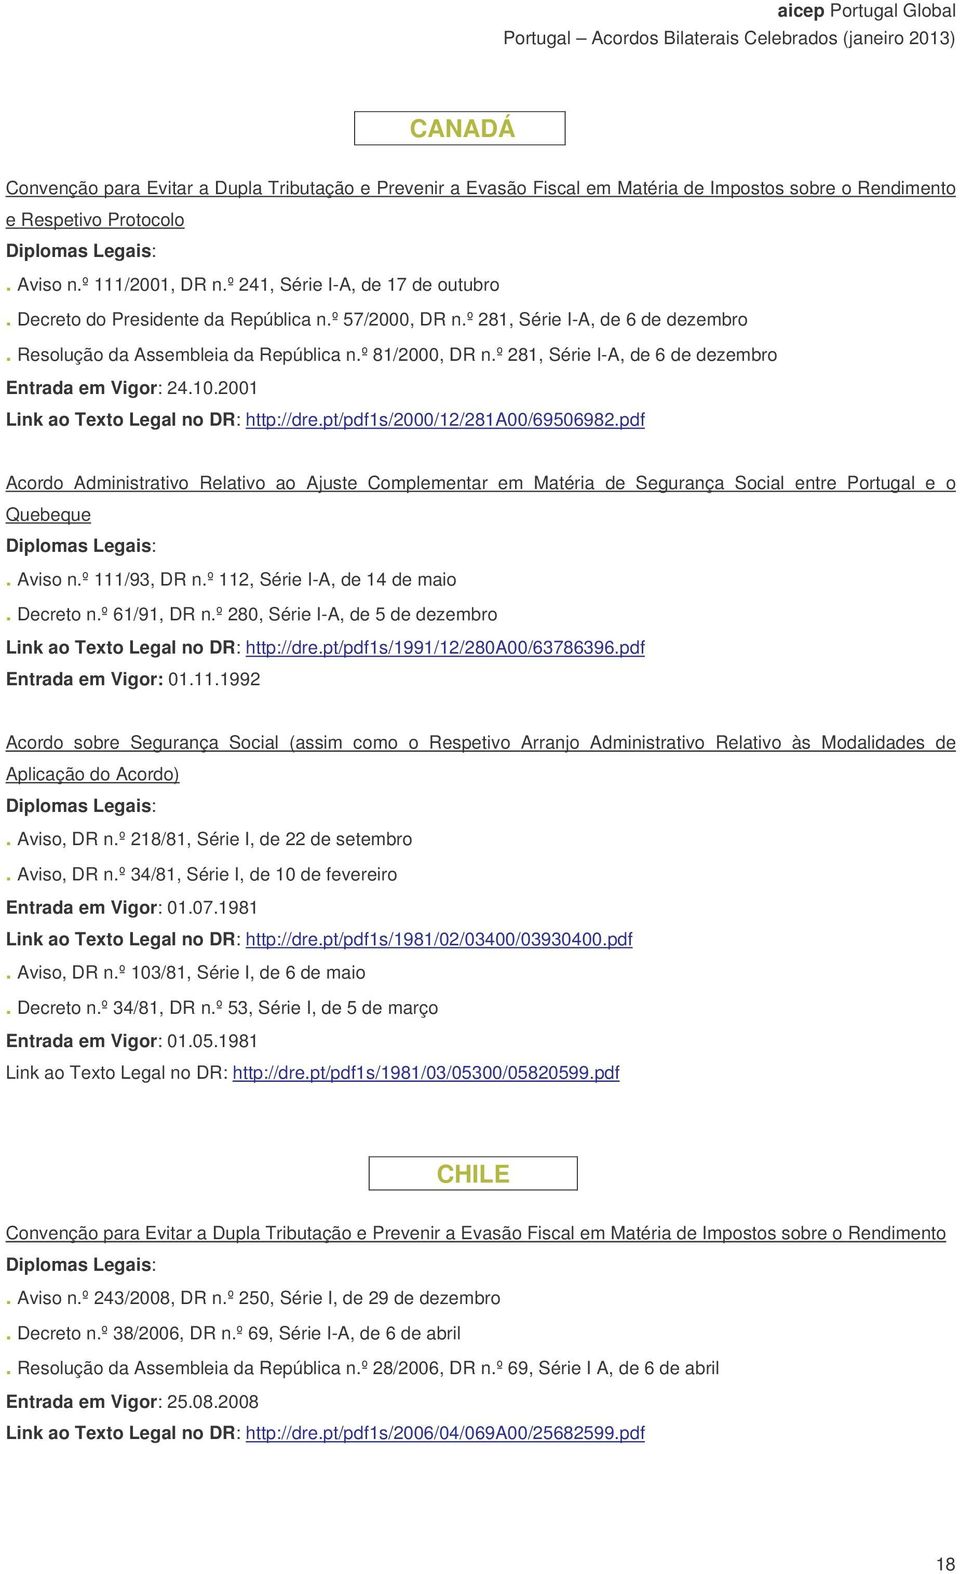 pdf Acordo Administrativo Relativo ao Ajuste Complementar em Matéria de Segurança Social entre Portugal e o Quebeque. Aviso n.º 111/93, DR n.º 112, Série I-A, de 14 de maio. Decreto n.º 61/91, DR n.